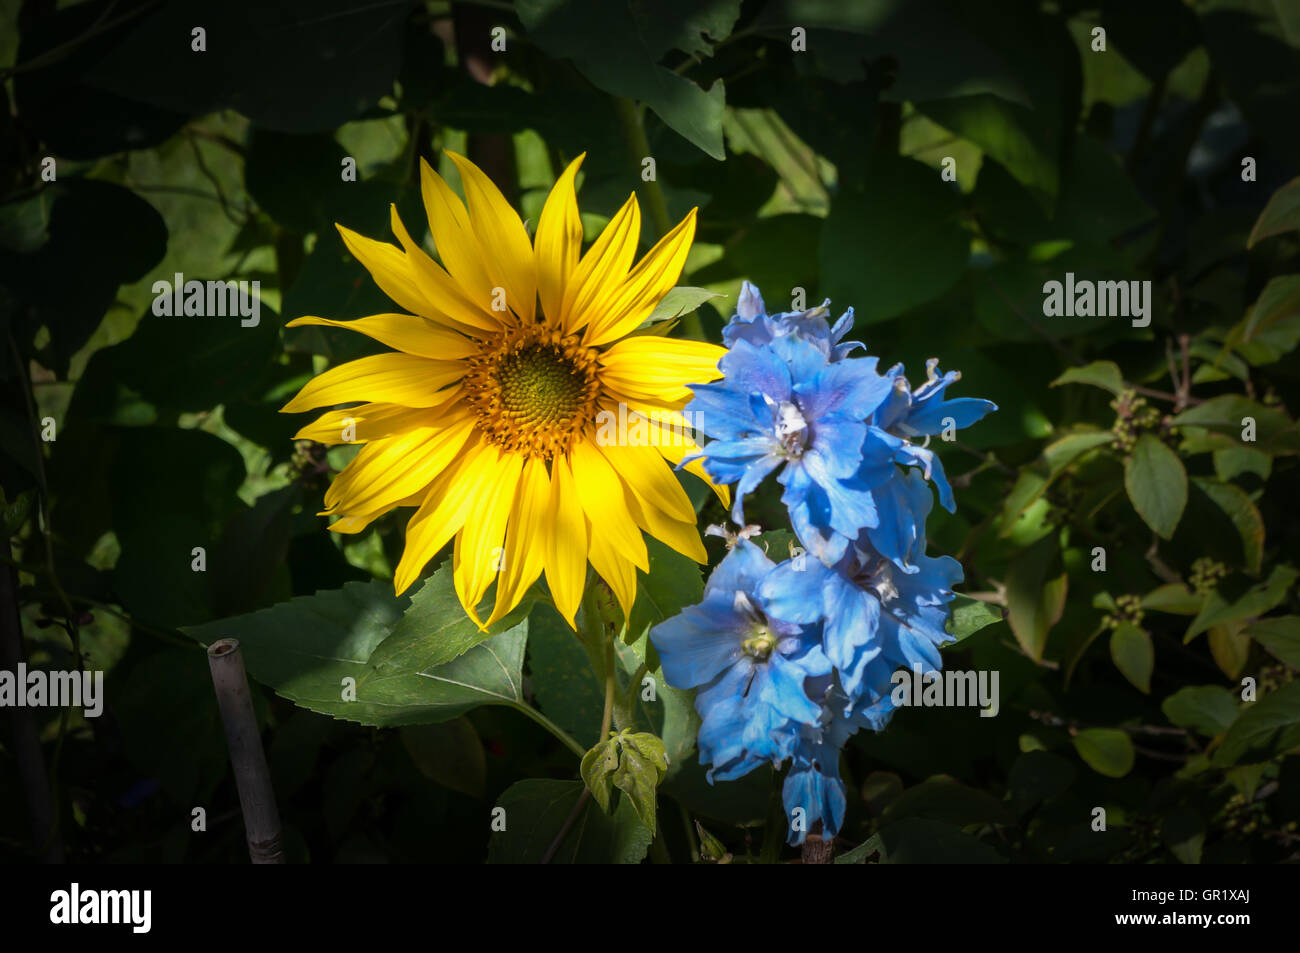 Colore complementare di partenariato luminoso giallo girasole e luce delphinium blu. Foto Stock